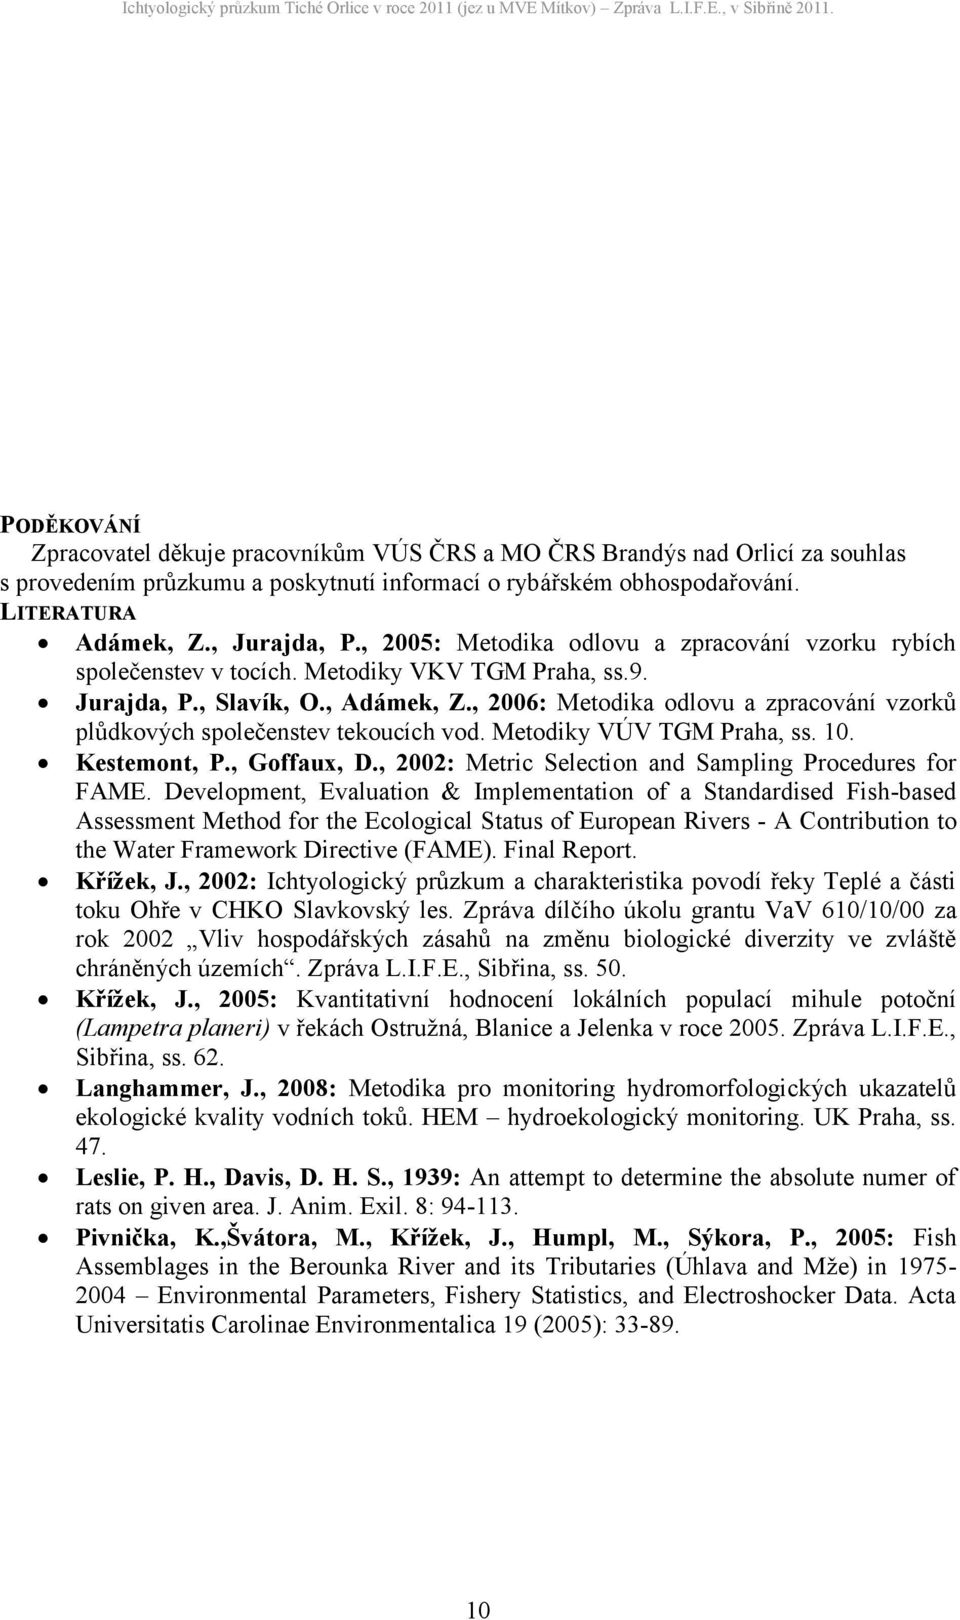 , 006: Metodika odlovu a zpracování vzorků plůdkových společenstev tekoucích vod. Metodiky VÚV TGM Praha, ss. 10. Kestemont, P., Goffaux, D., 00: Metric Selection and Sampling Procedures for FAME.